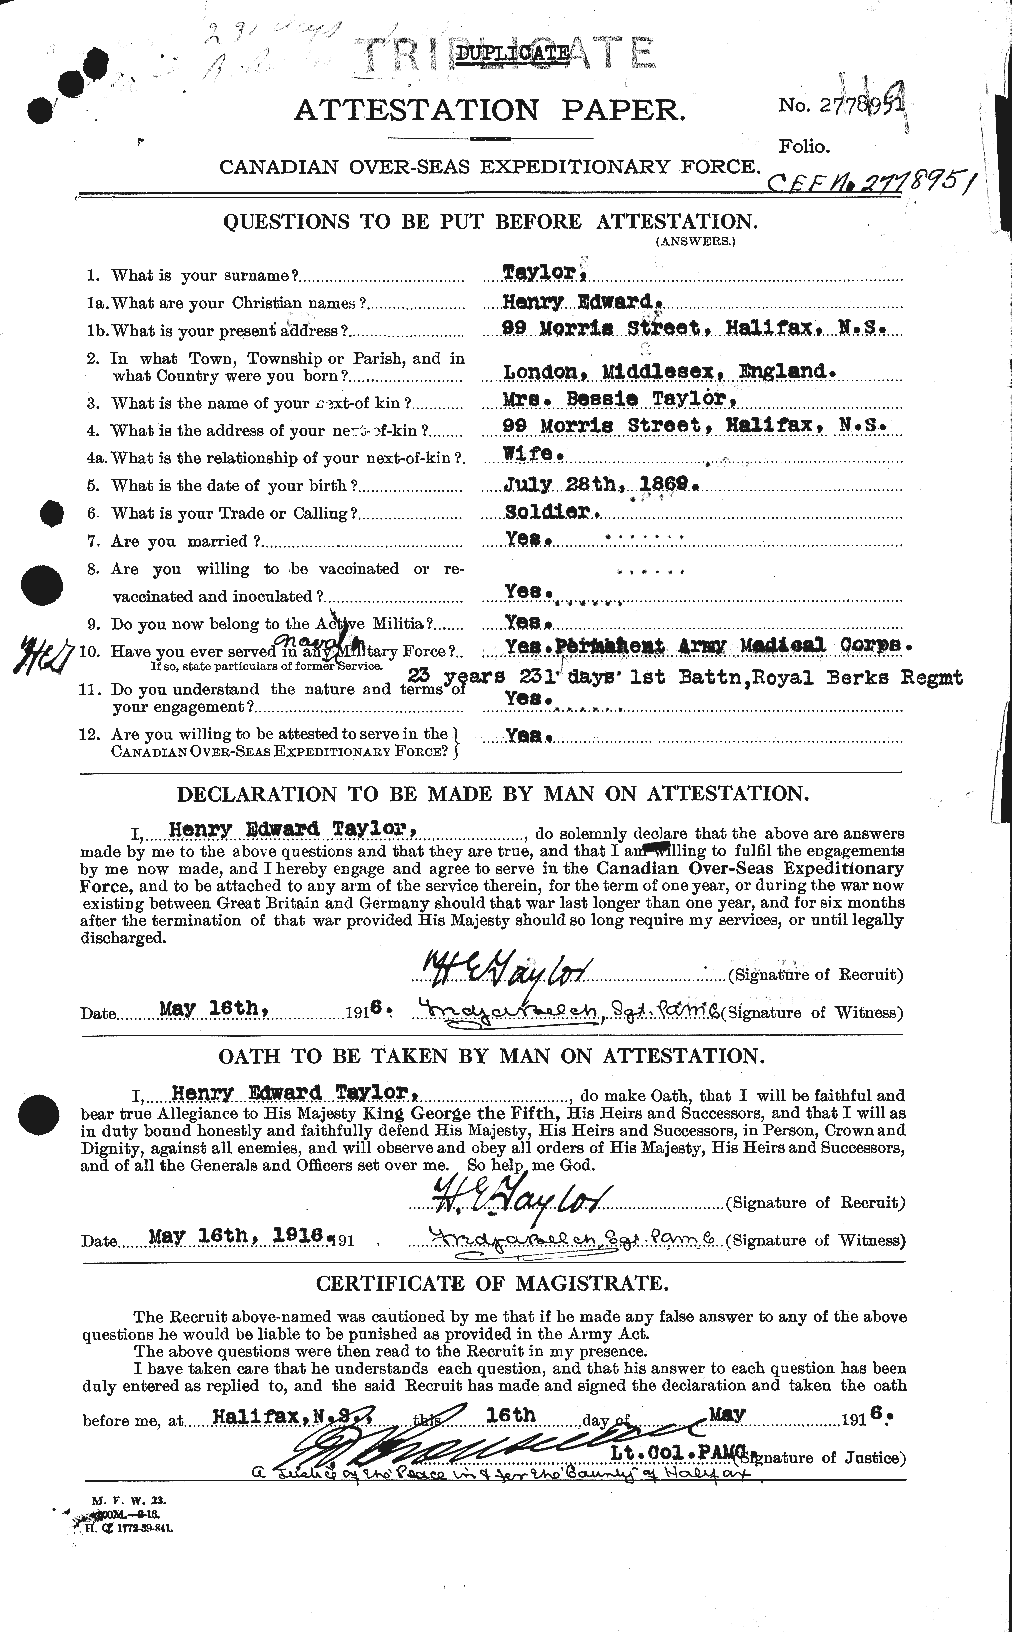 Dossiers du Personnel de la Première Guerre mondiale - CEC 626535a